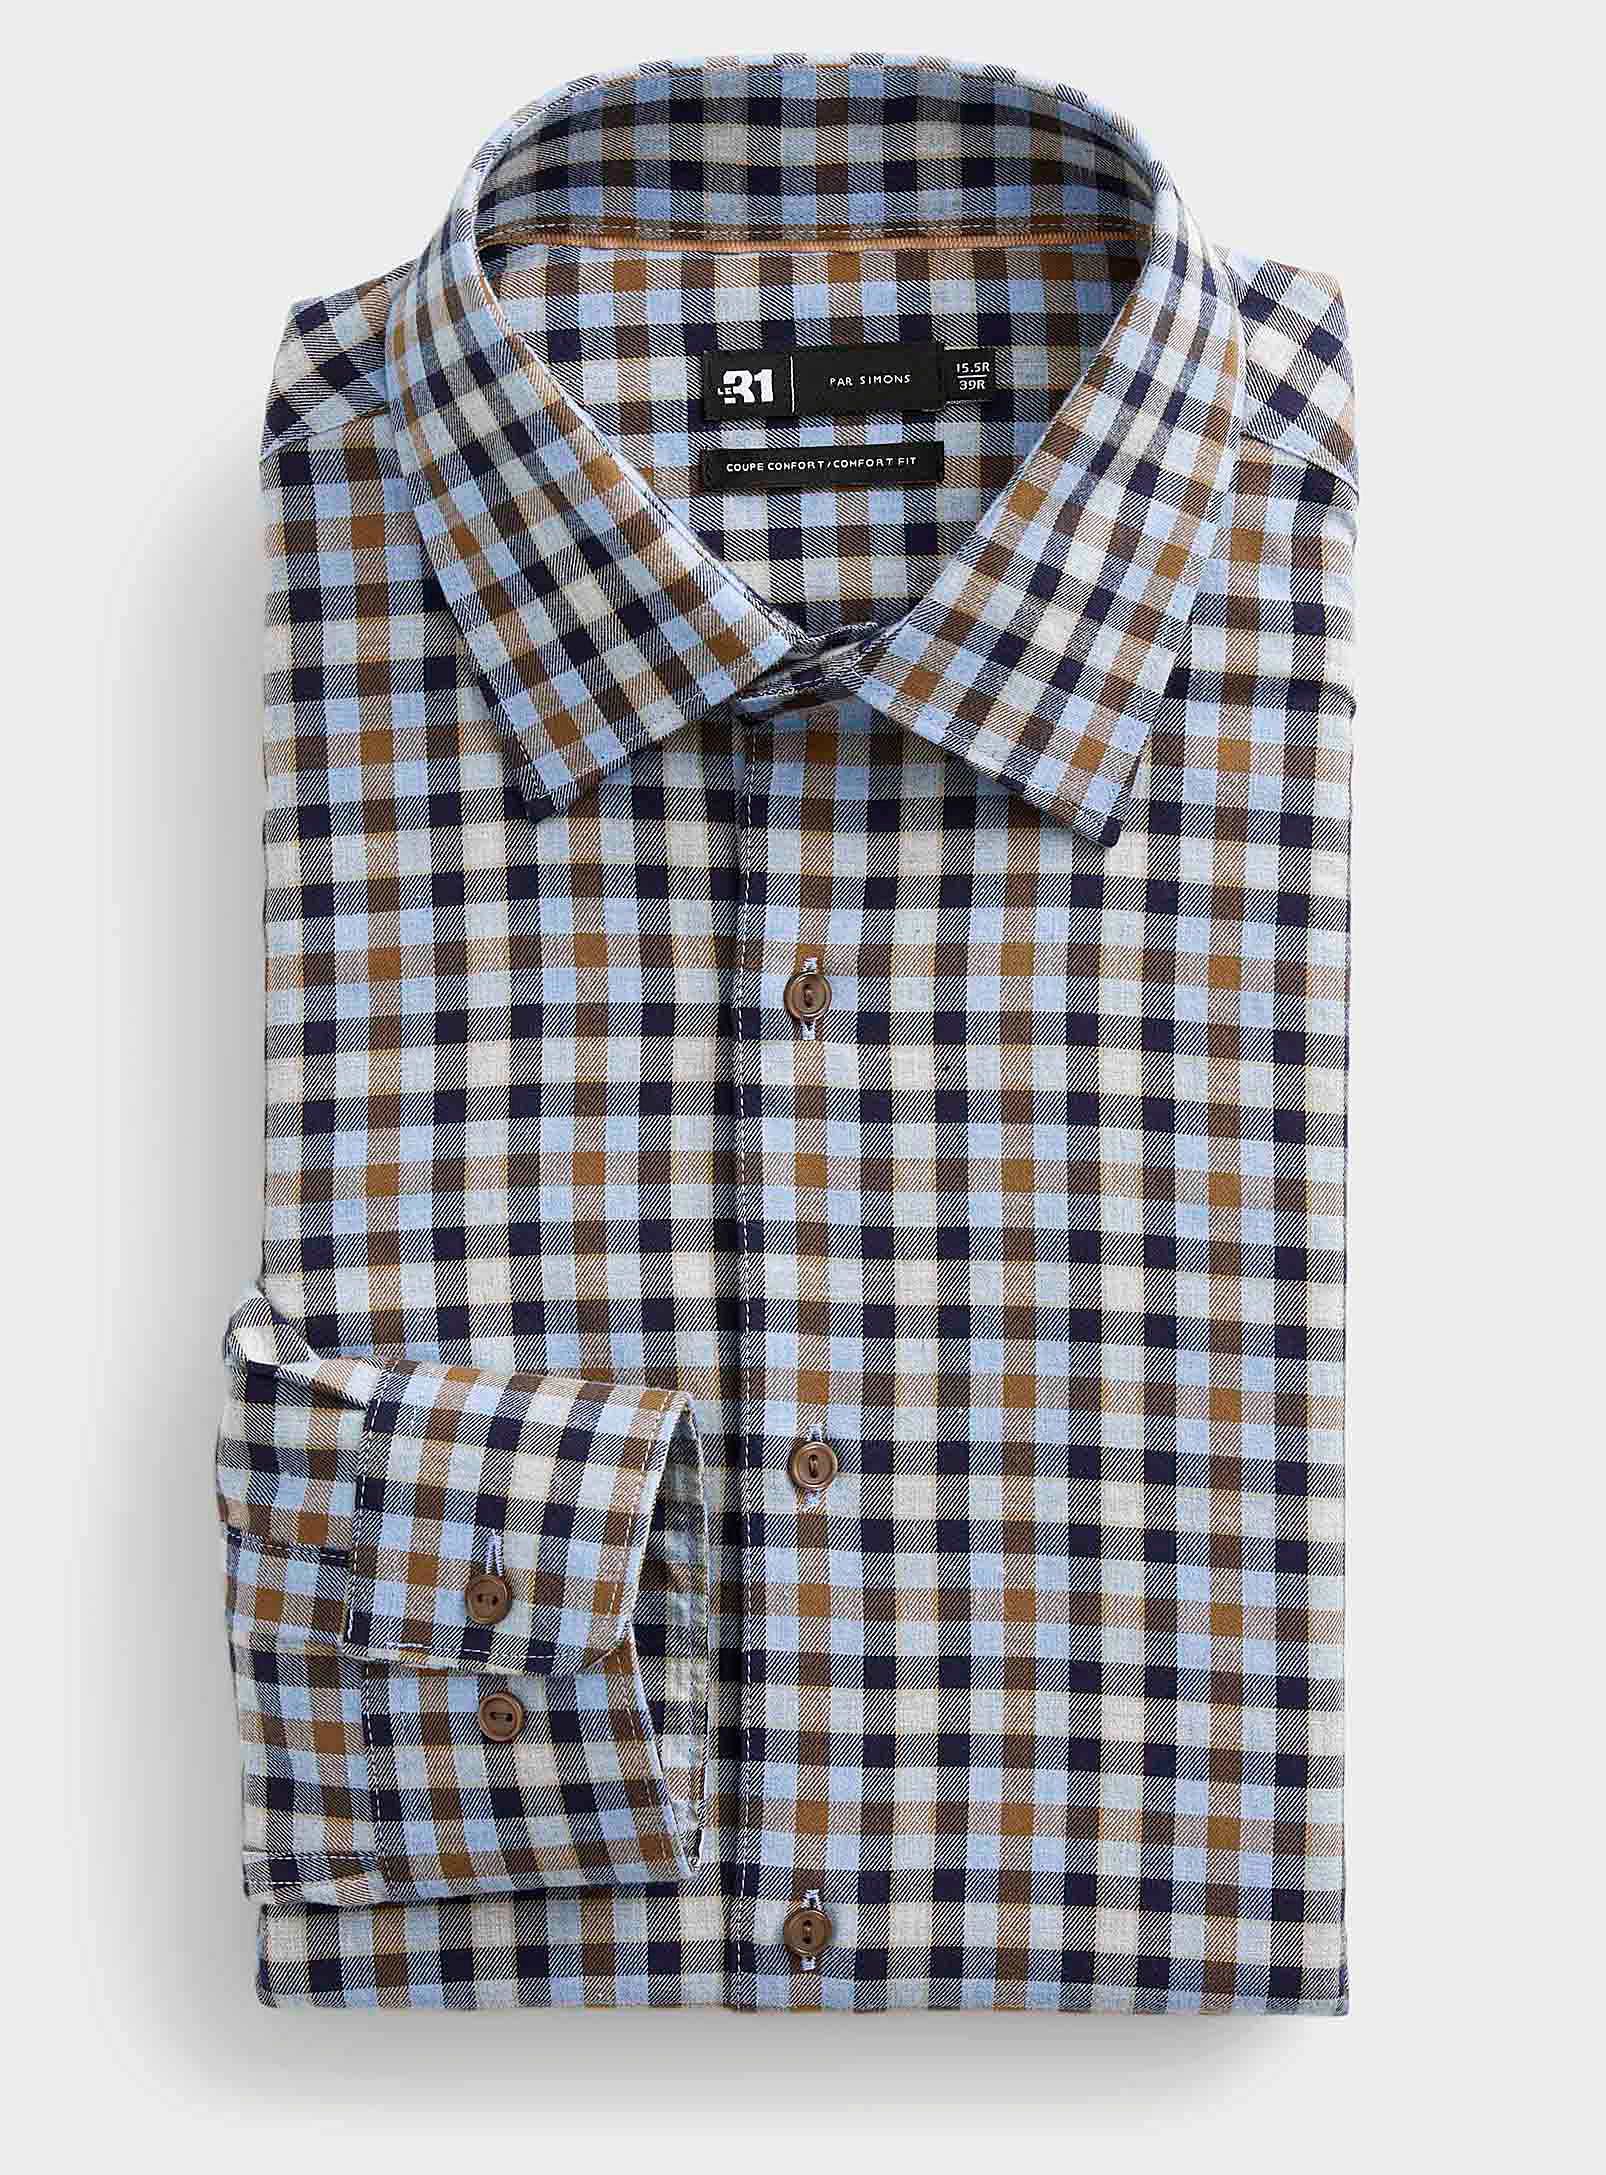 Le 31 - Men's Winter check shirt Comfort fit